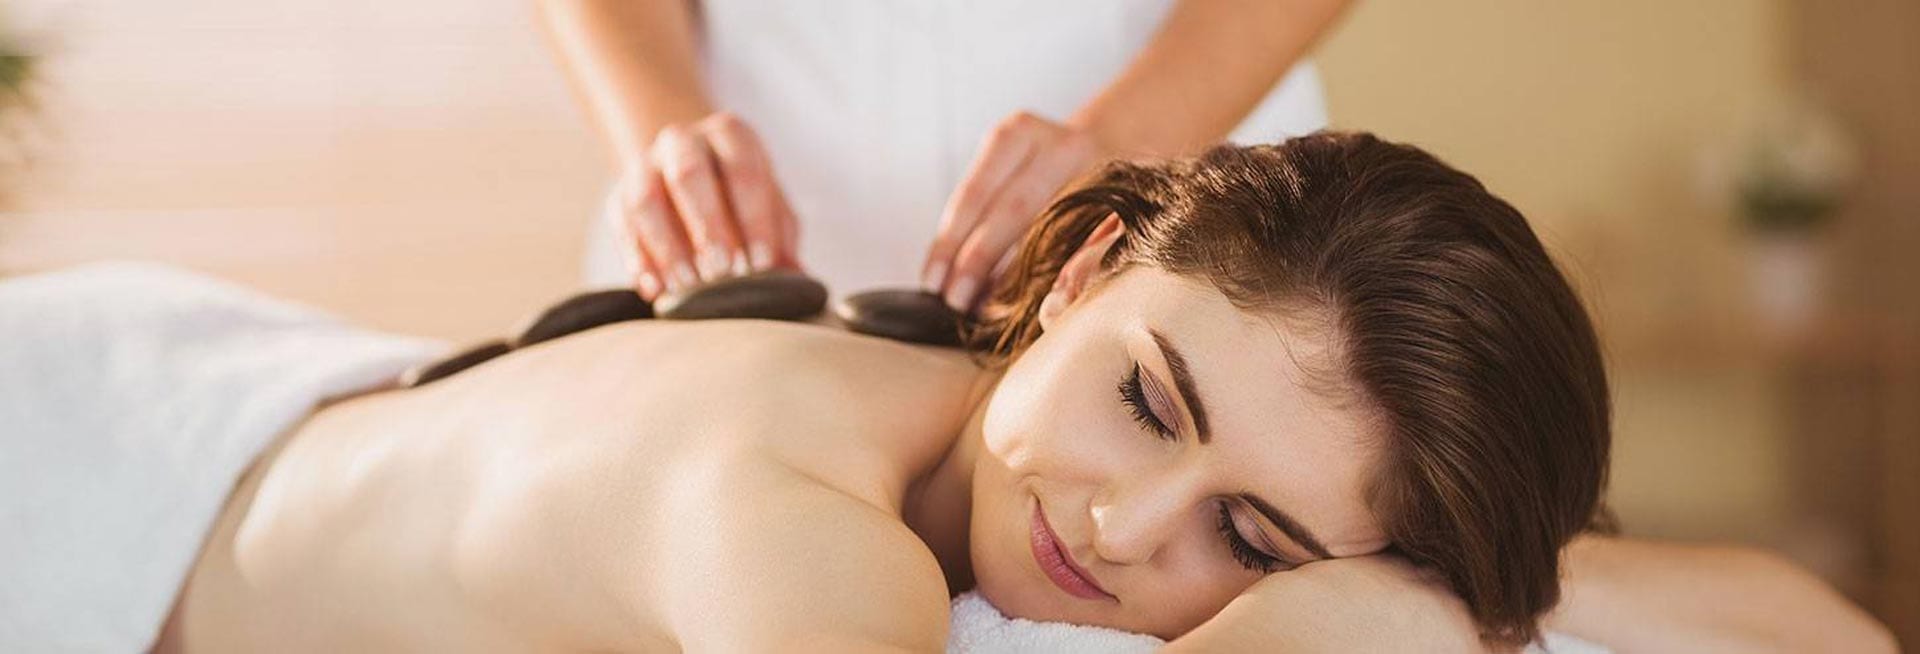 Woman getting a hot stone massage.